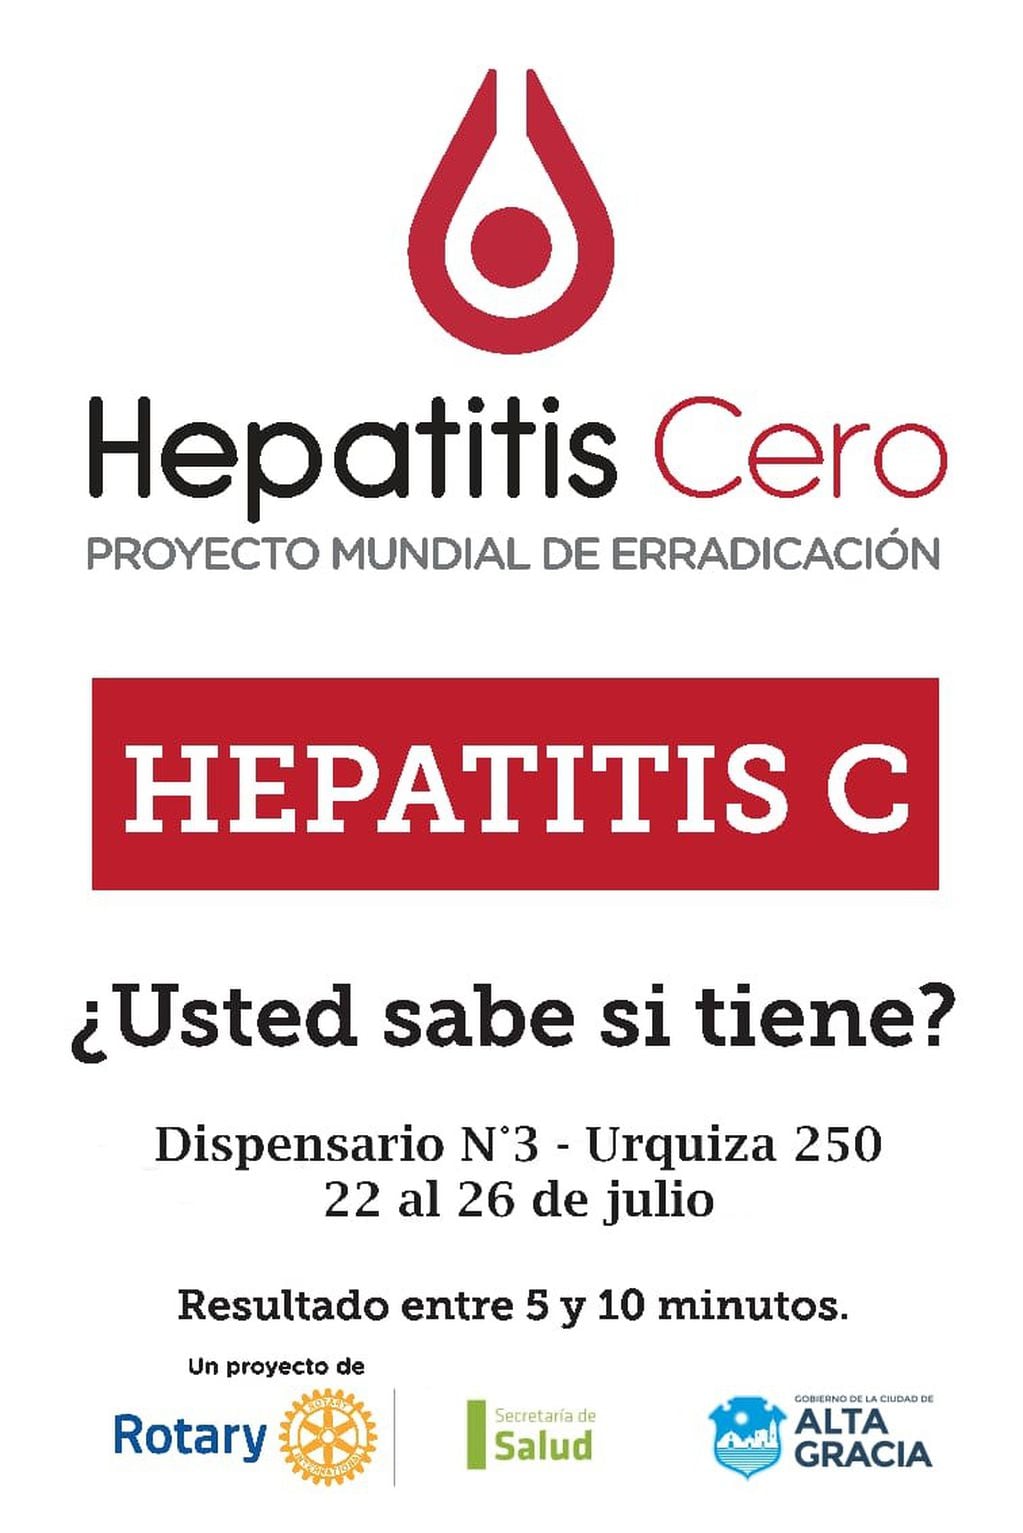 Hepatitis Cero: Proyecto Mundial de Erradicación (Rotary Club Alta Gracia).